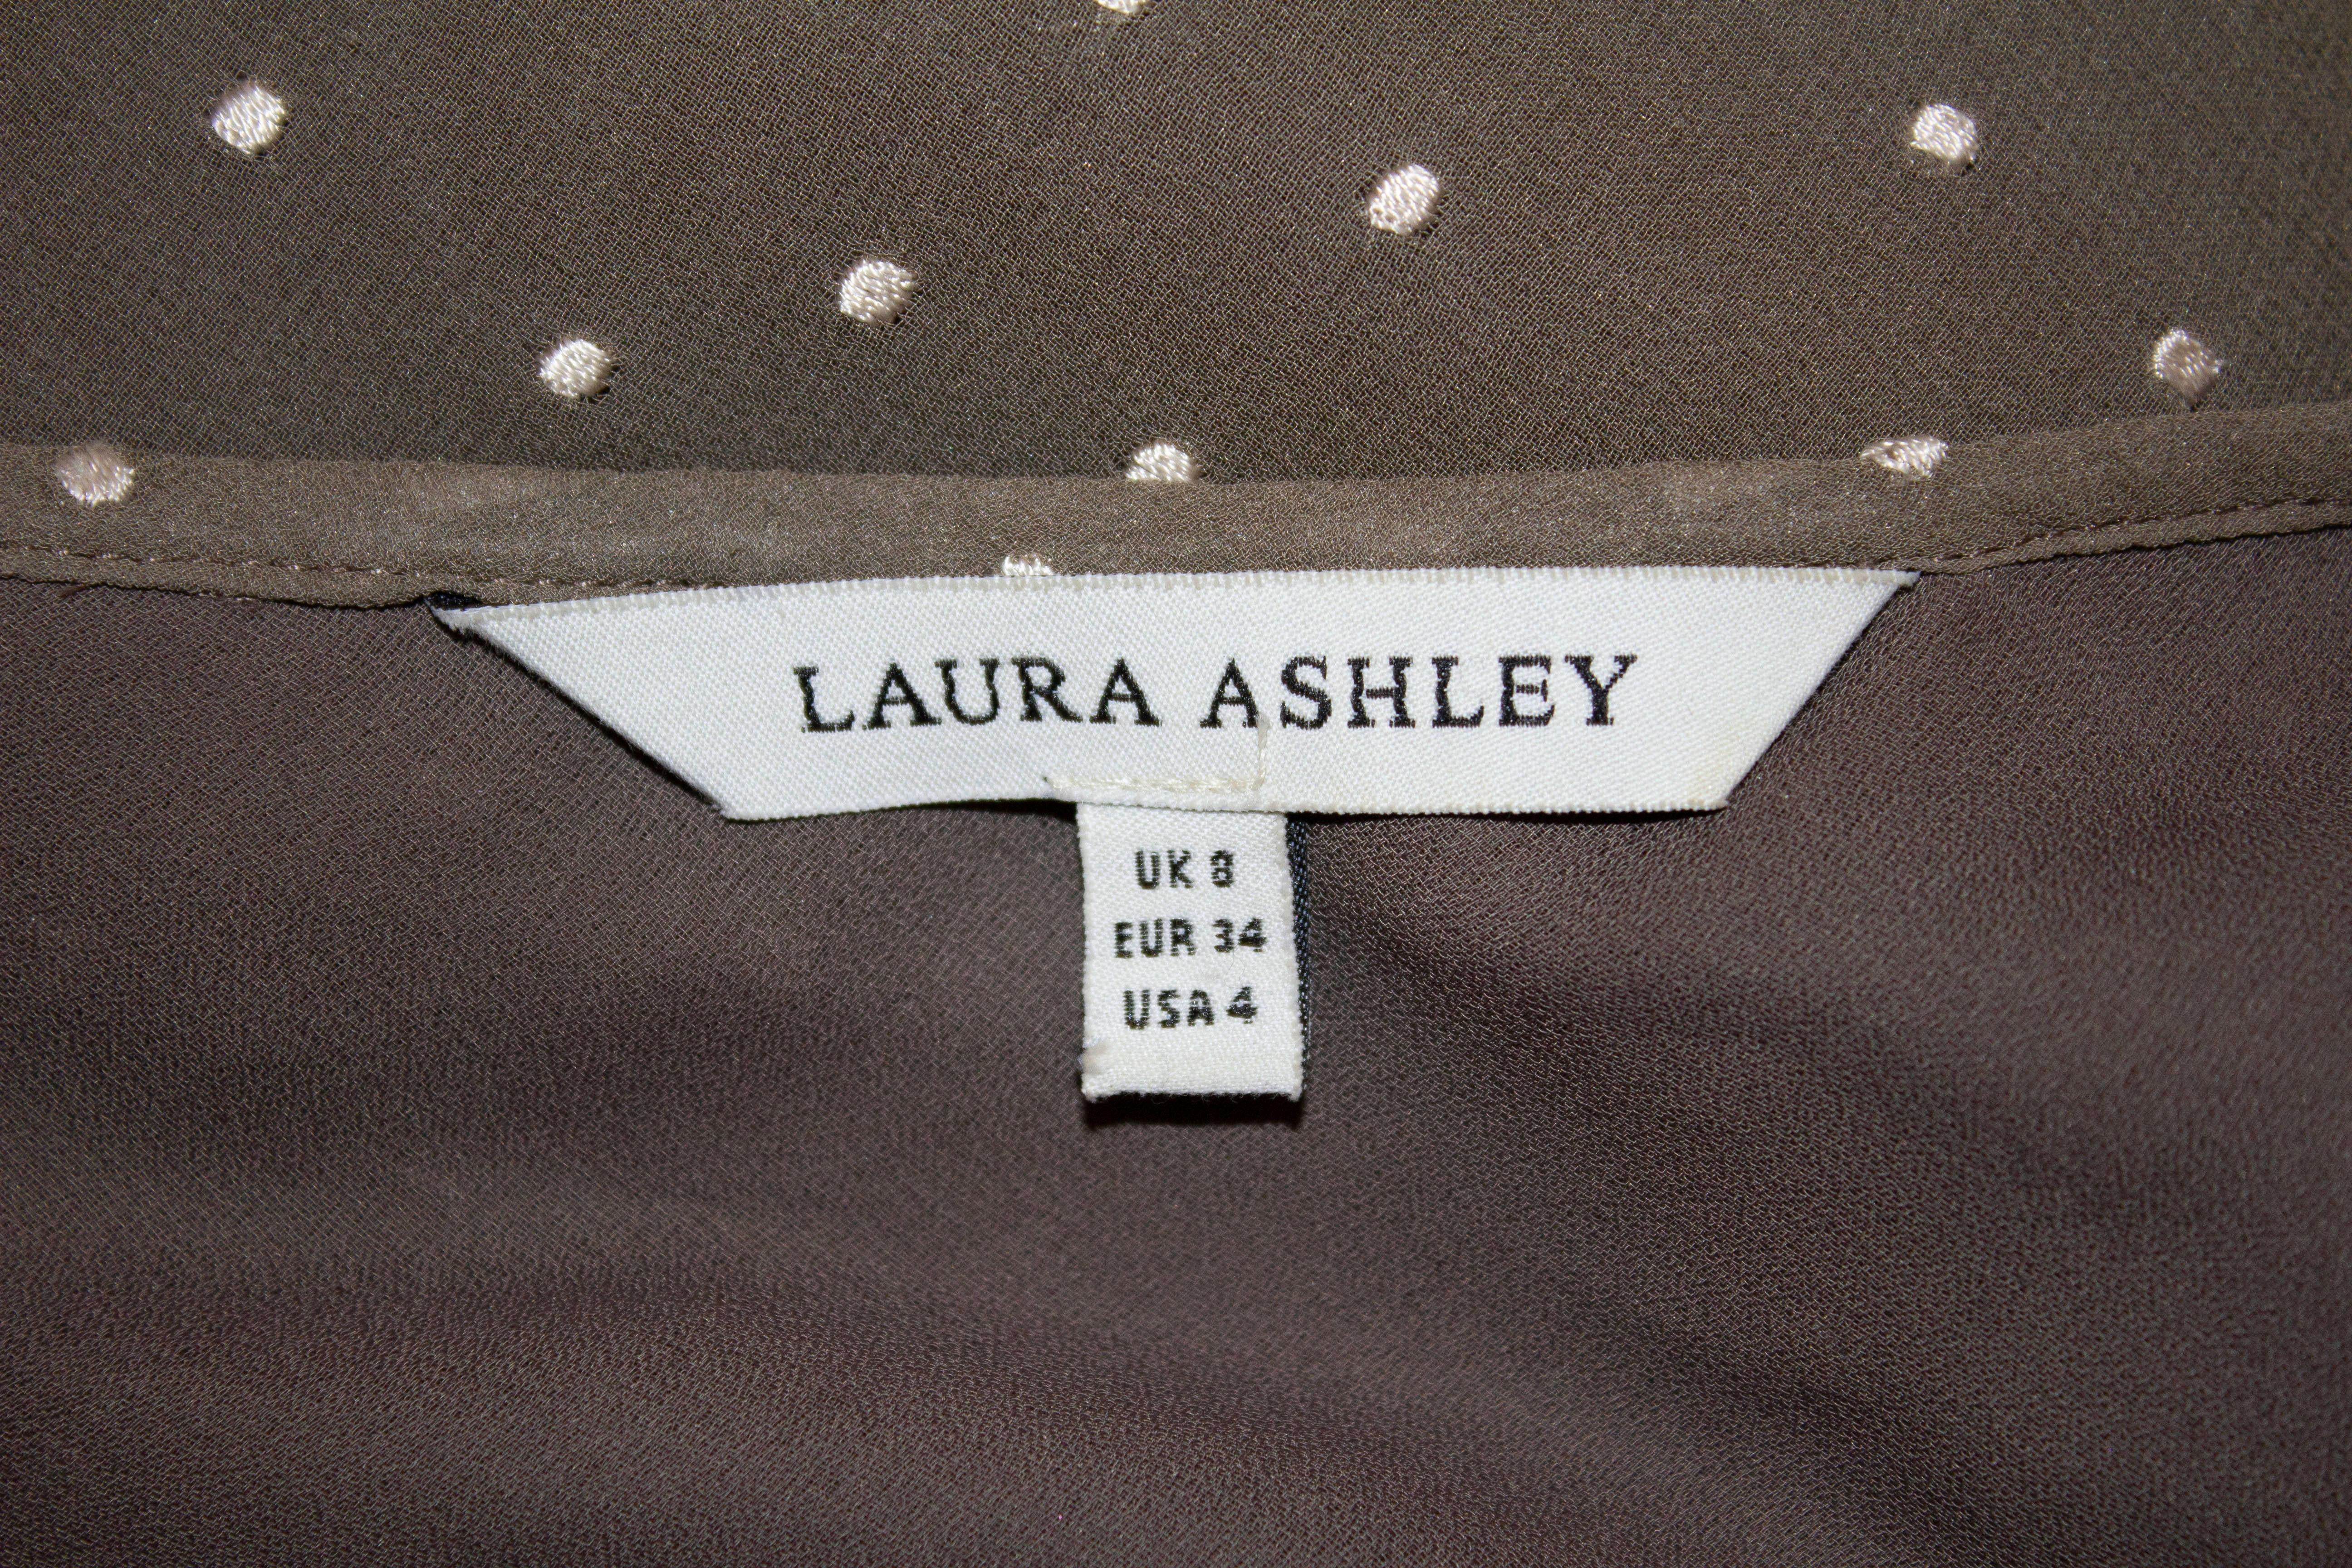 Ein hübsches und leicht zu tragendes Teekleid von Laura Ashley. Dieses kaffeefarbene Seidenkleid mit weißen Flecken hat lange Ärmel, eine Schnürung und eine schöne Form. Es ist vollständig gefüttert. 
Maße: Büste 32'', Länge 48''
